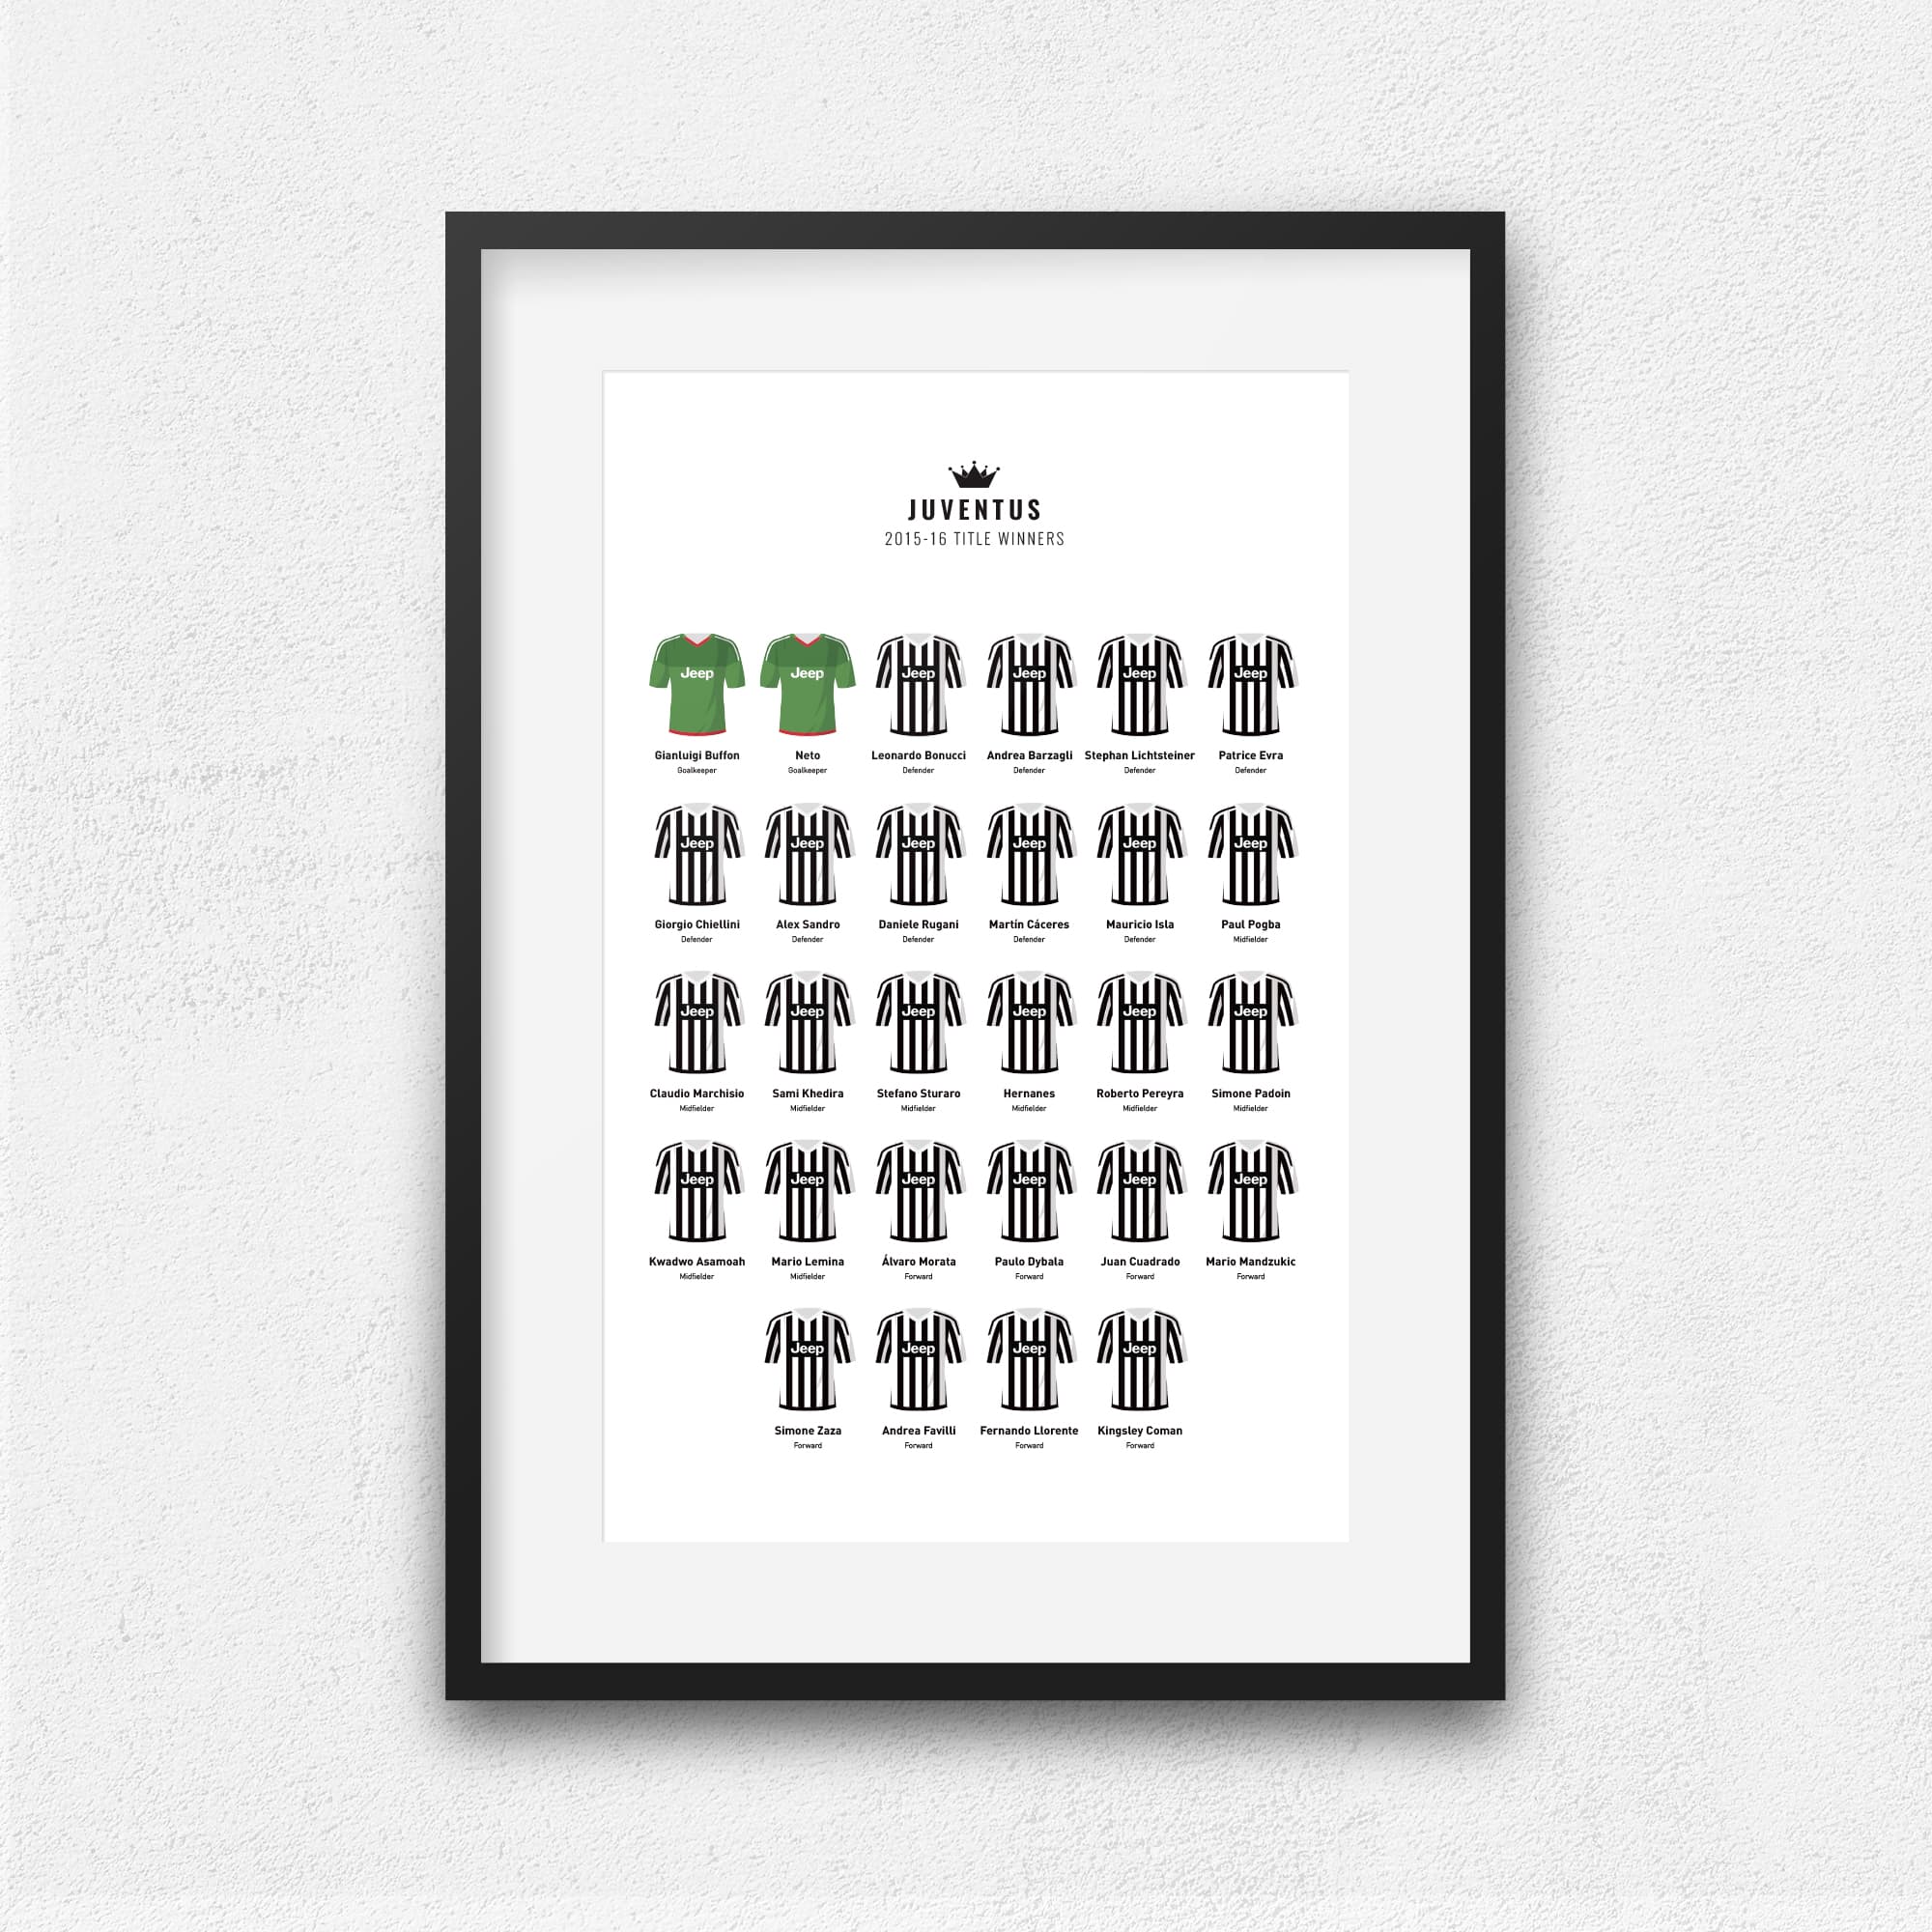 Juventus 2016 Title Winners Football Team Print Good Team On Paper